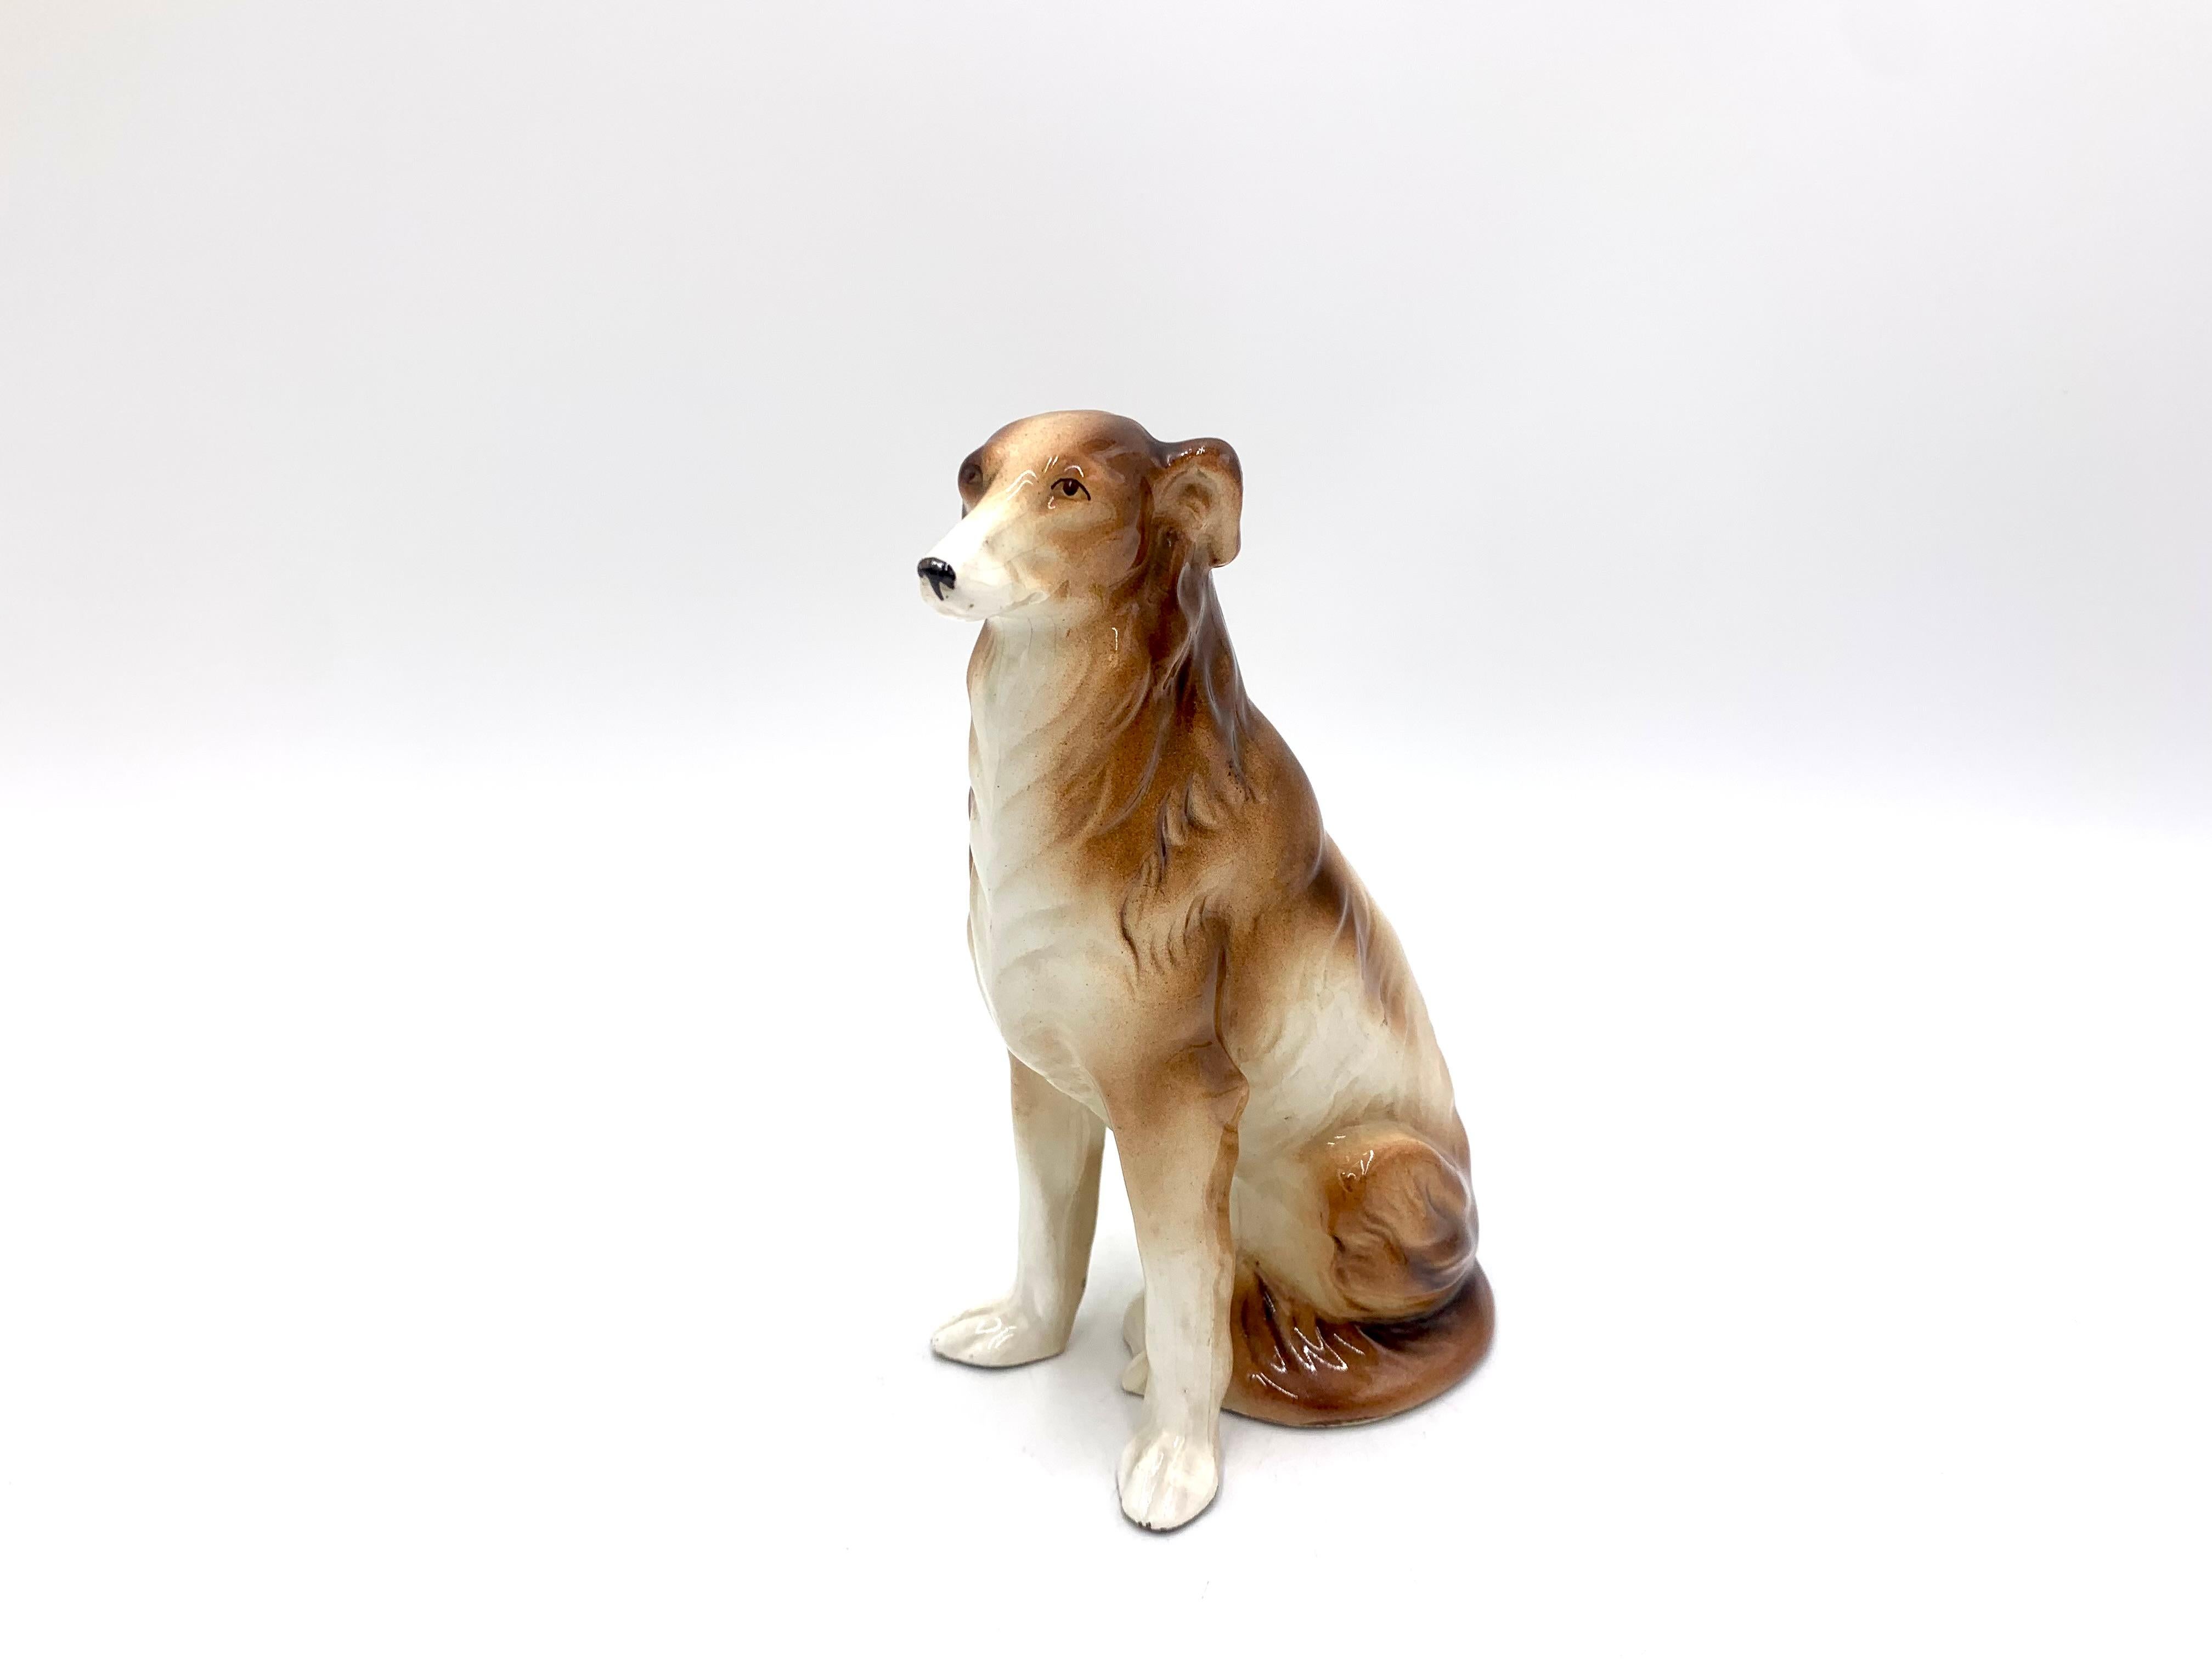 Keramik-Figur eines sitzenden Hundes

Keine Unterschrift

Wahrscheinlich die 1960er Jahre.

höhe 17cm, Breite 10cm, Tiefe 6cm